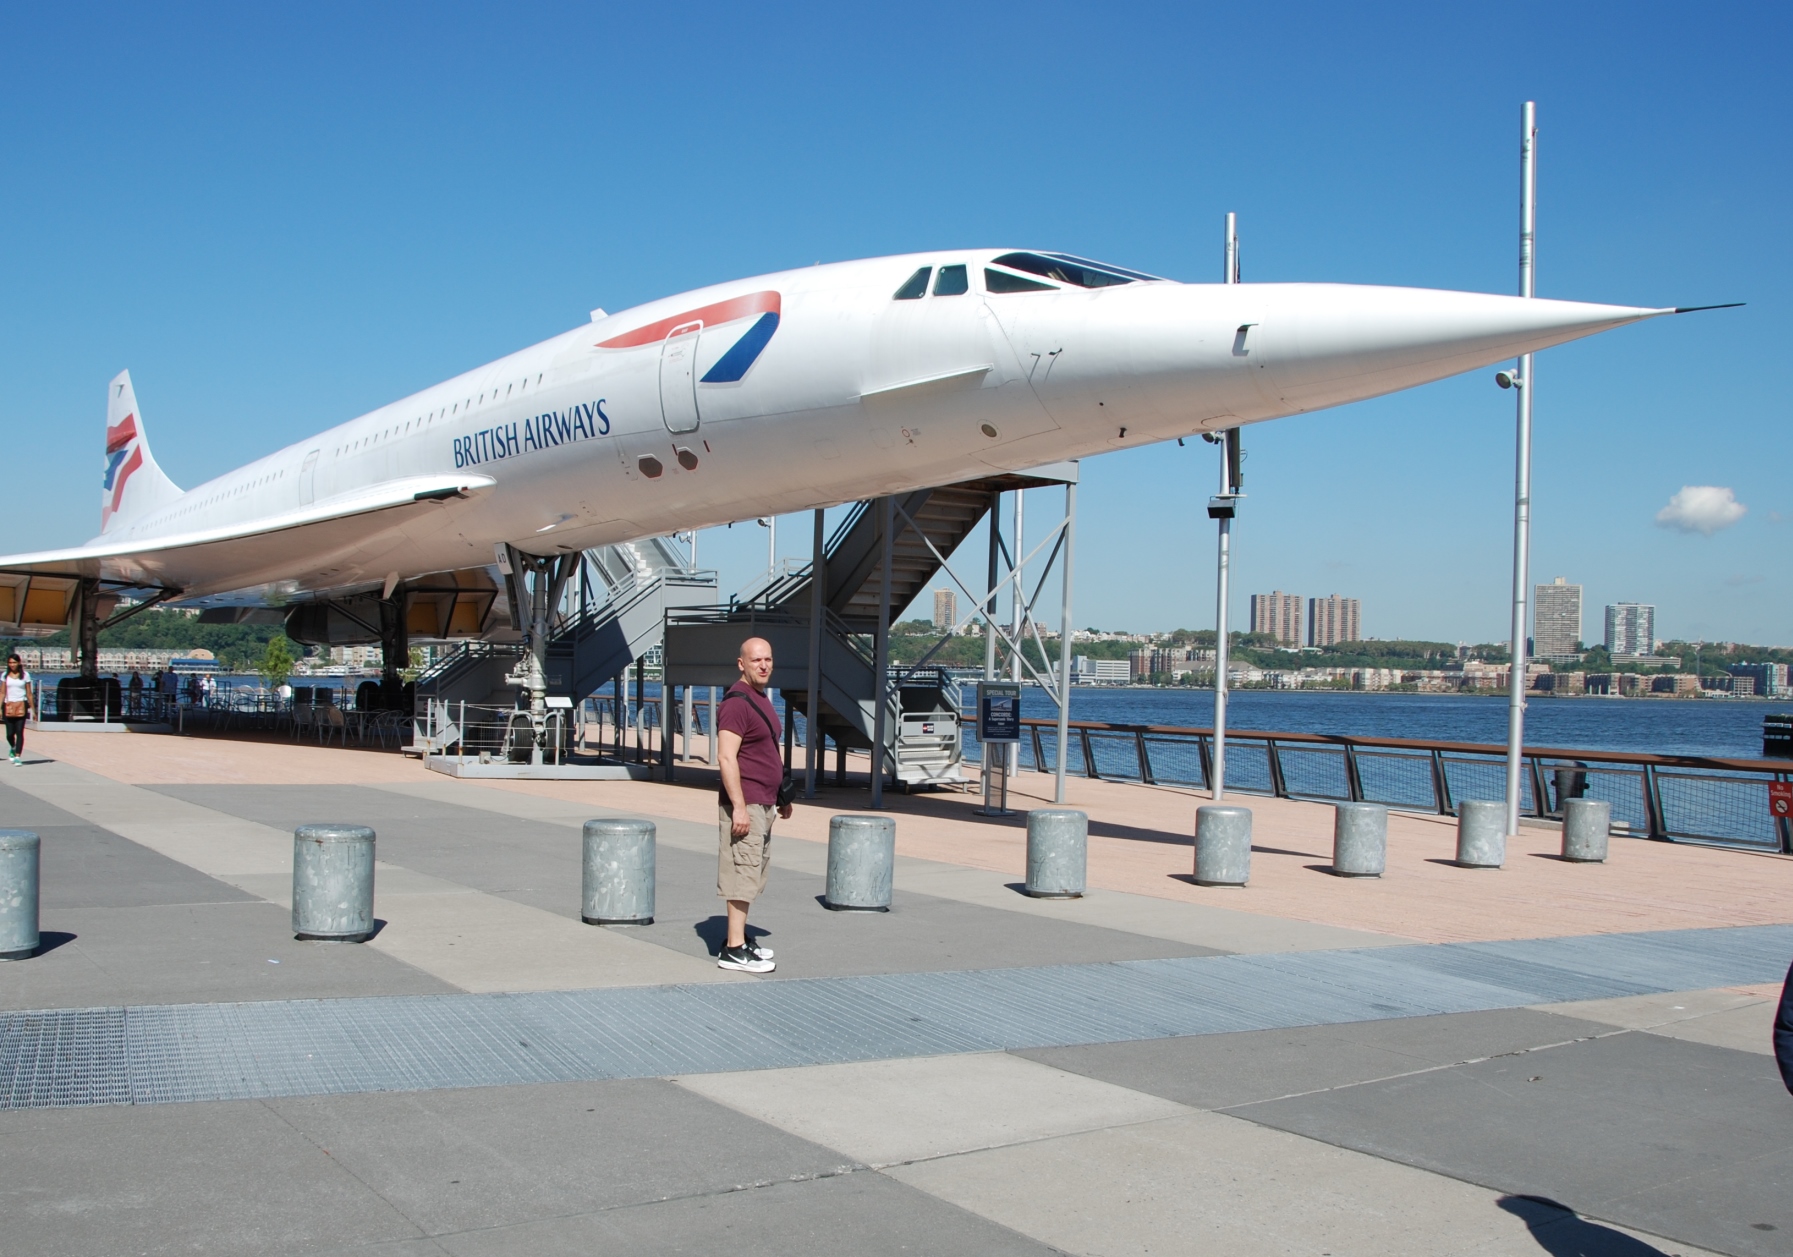 New York’taki Concorde, Bakıma Giriyor